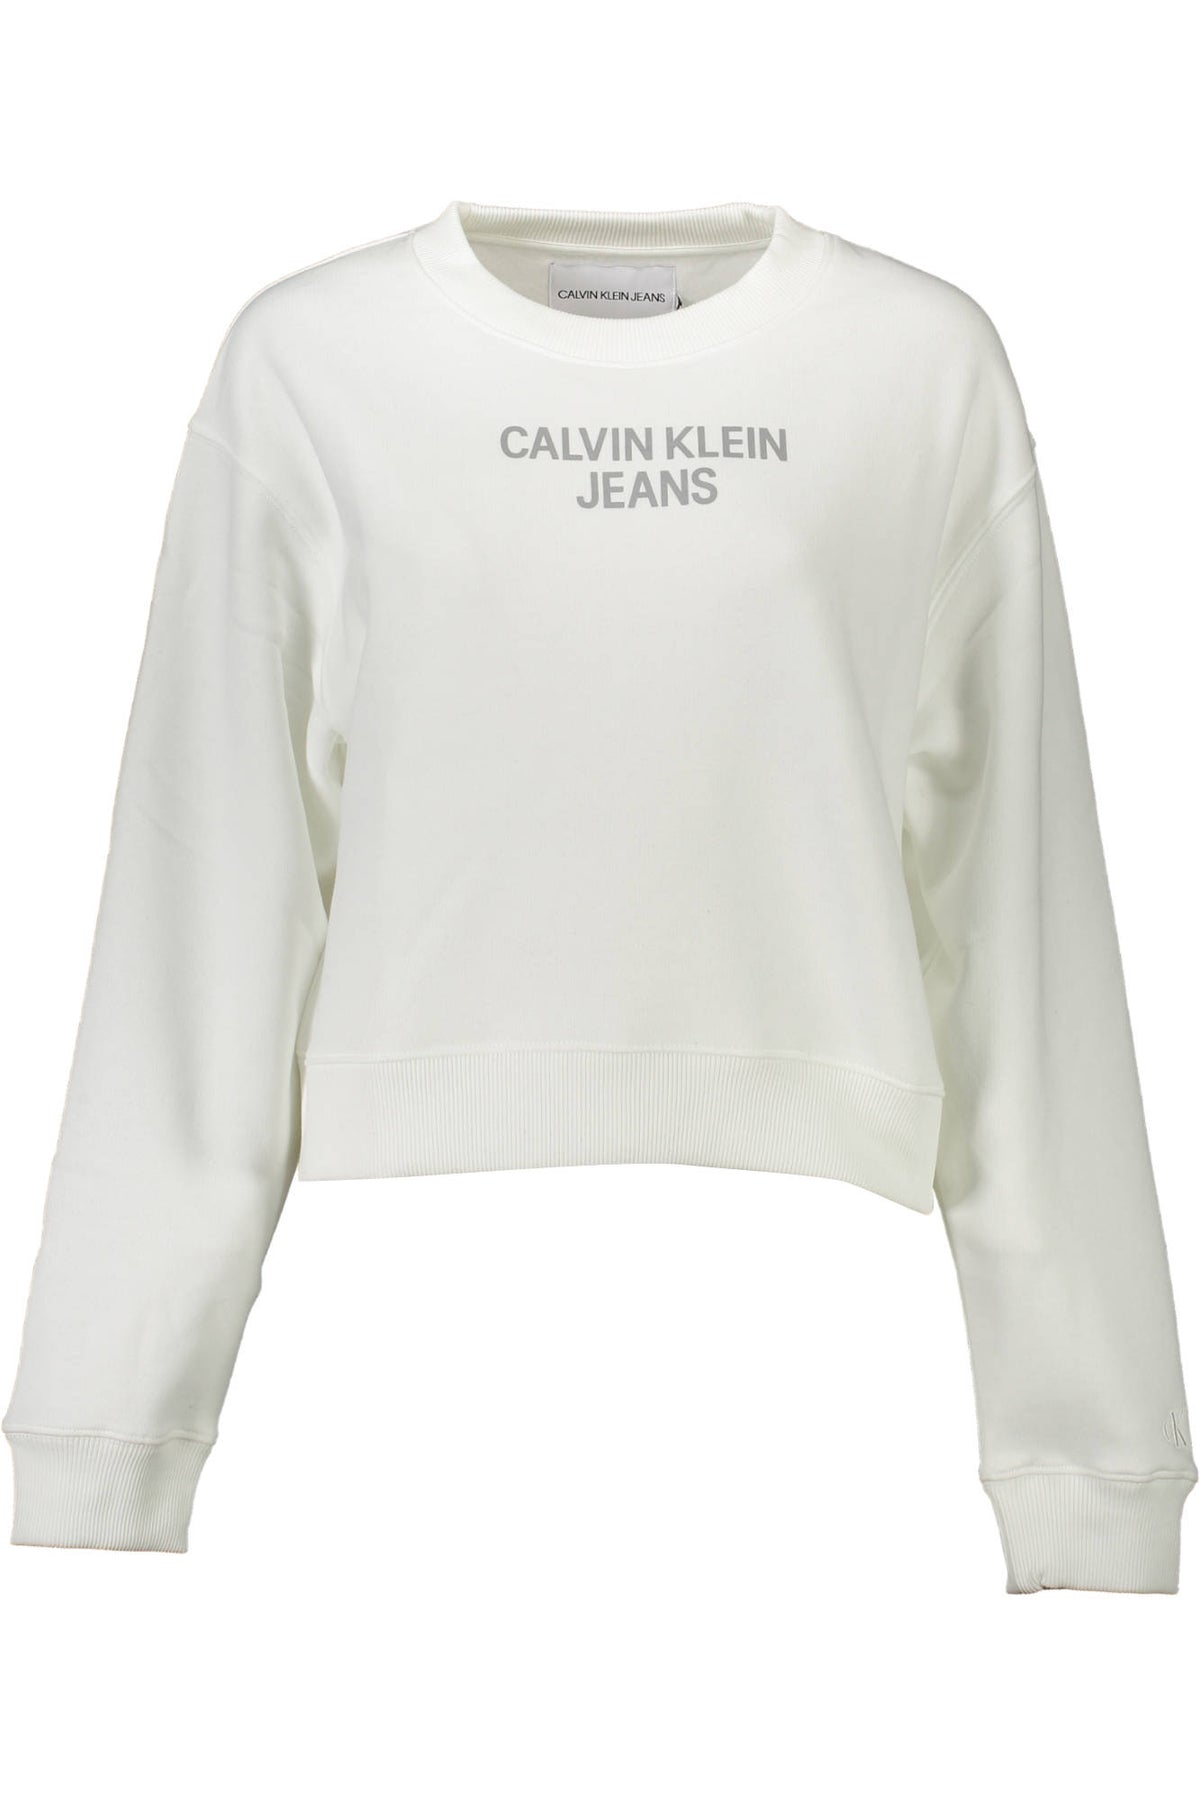 CALVIN KLEIN Damen Pullover Sweatshirt Shirt Oberteil